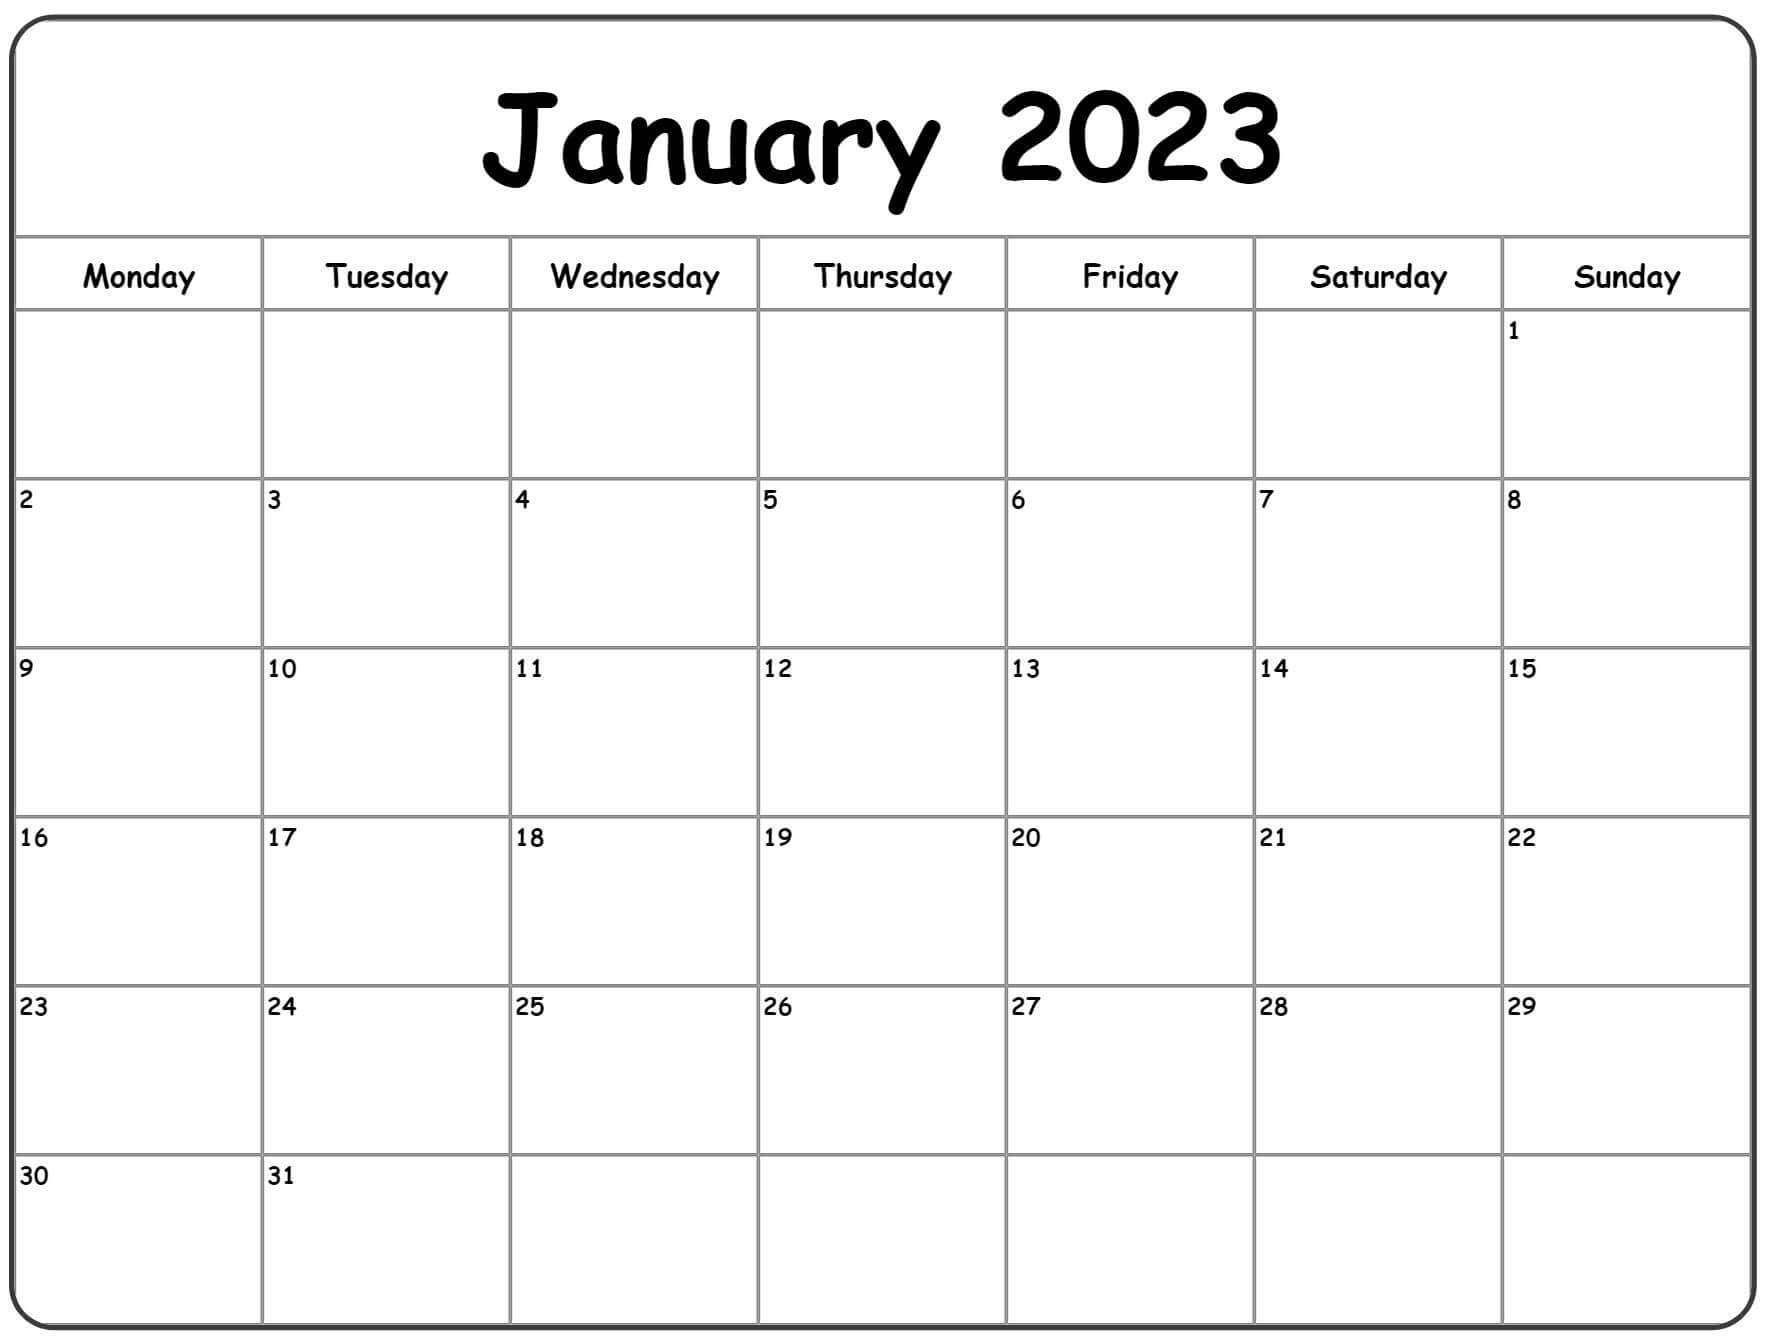 January 2023 Monday Calendar